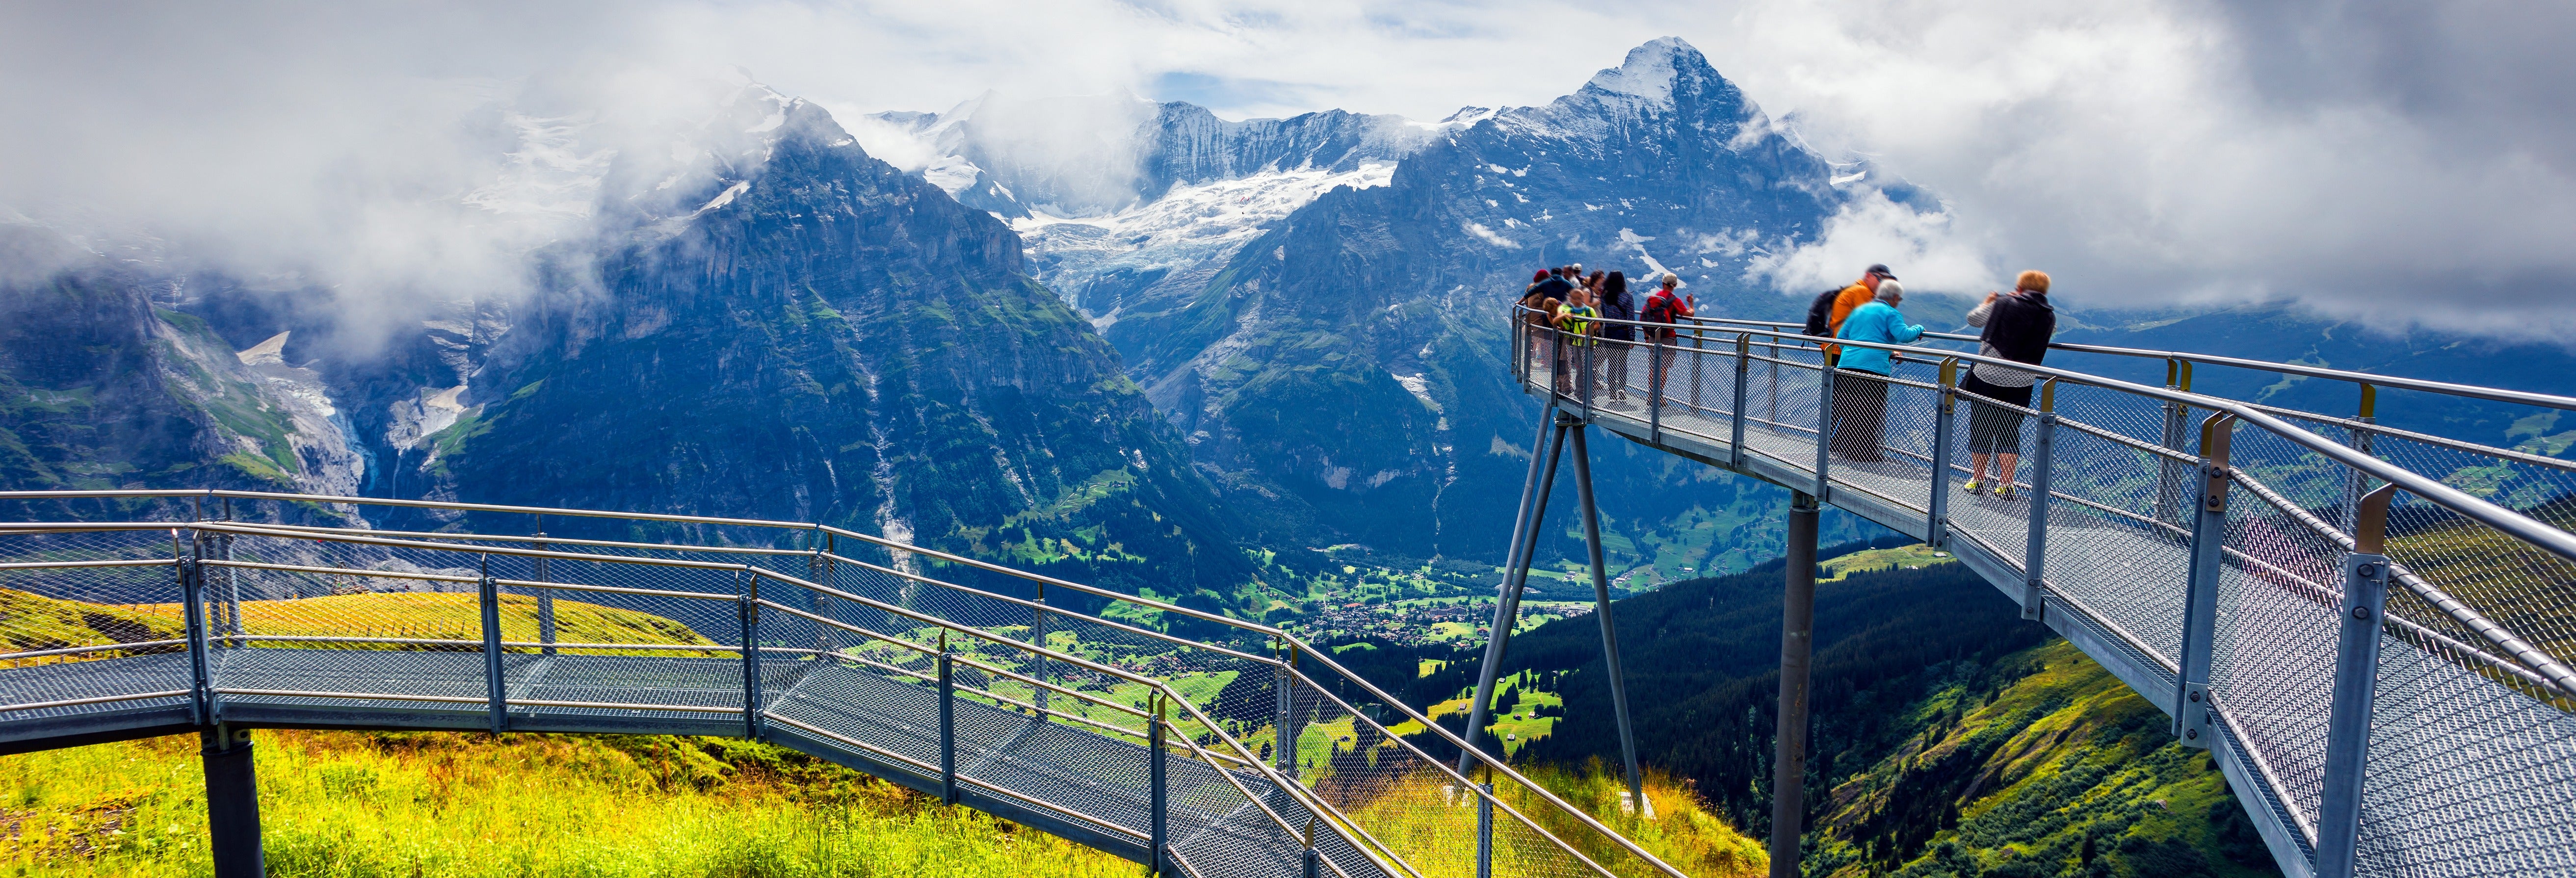 Excursão a Interlaken e Grindelwald